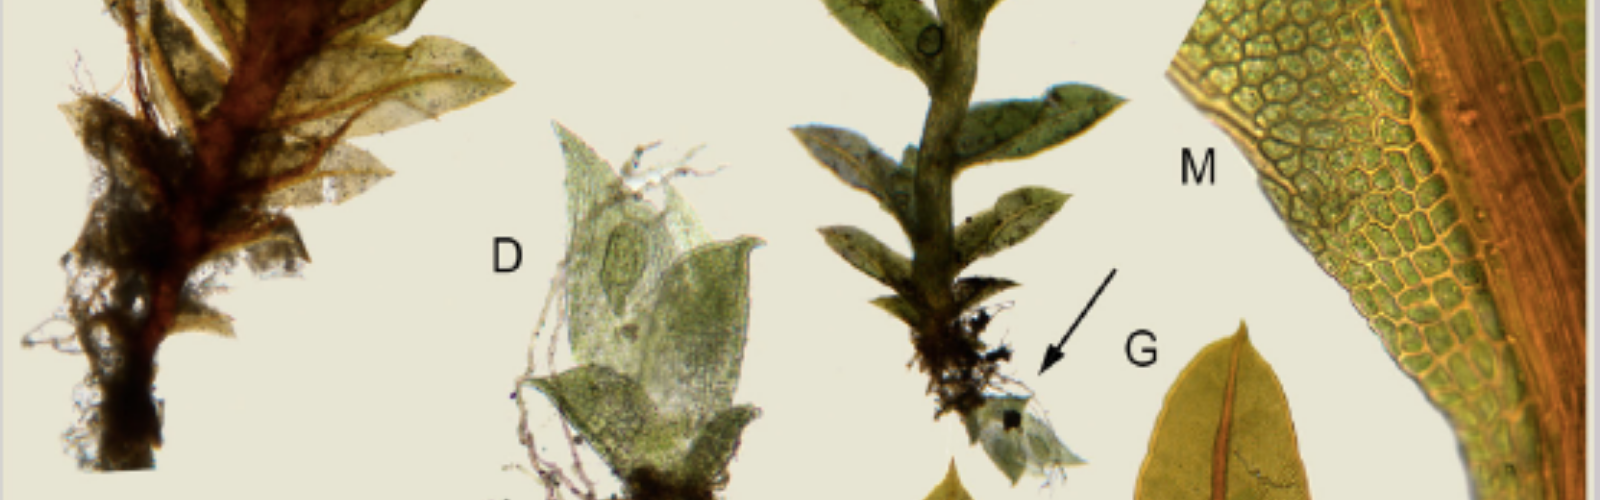 Nota de prensa - La UMU describe tres nuevas especies de plantas desconocidas para la ciencia